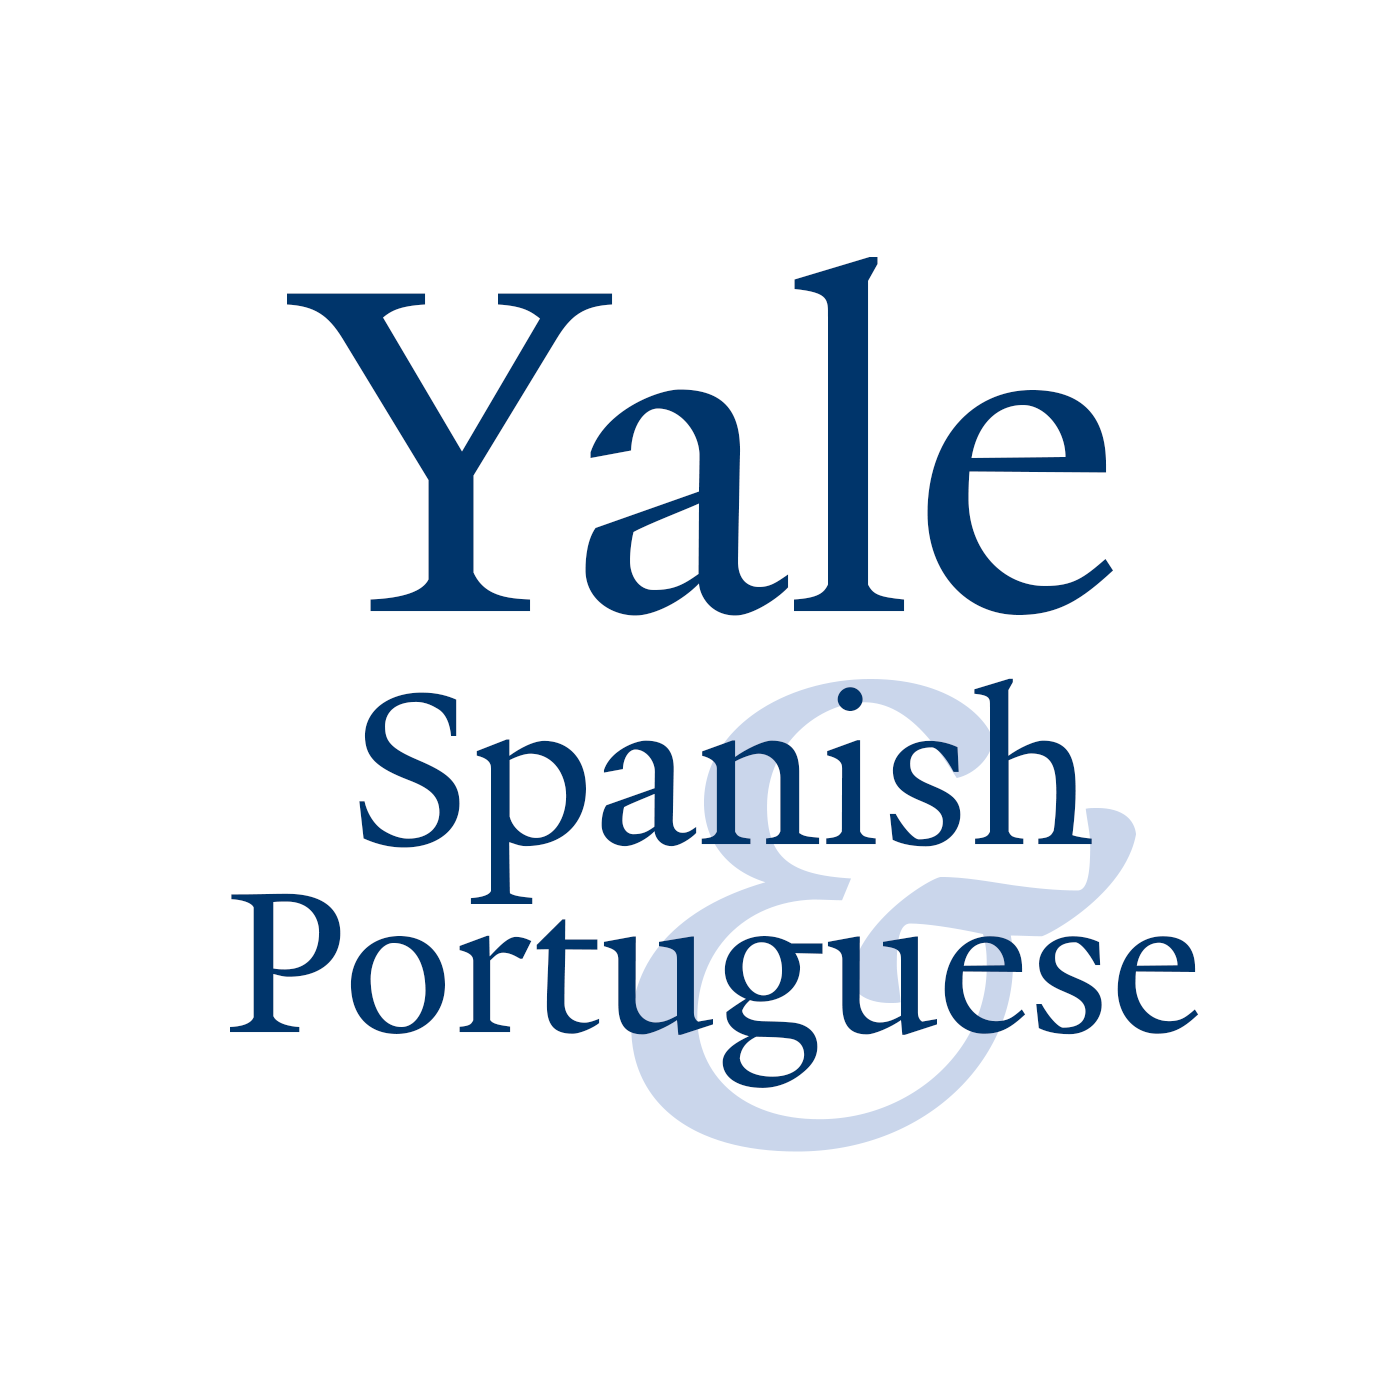 Yale University Department of Spanish & Portuguese